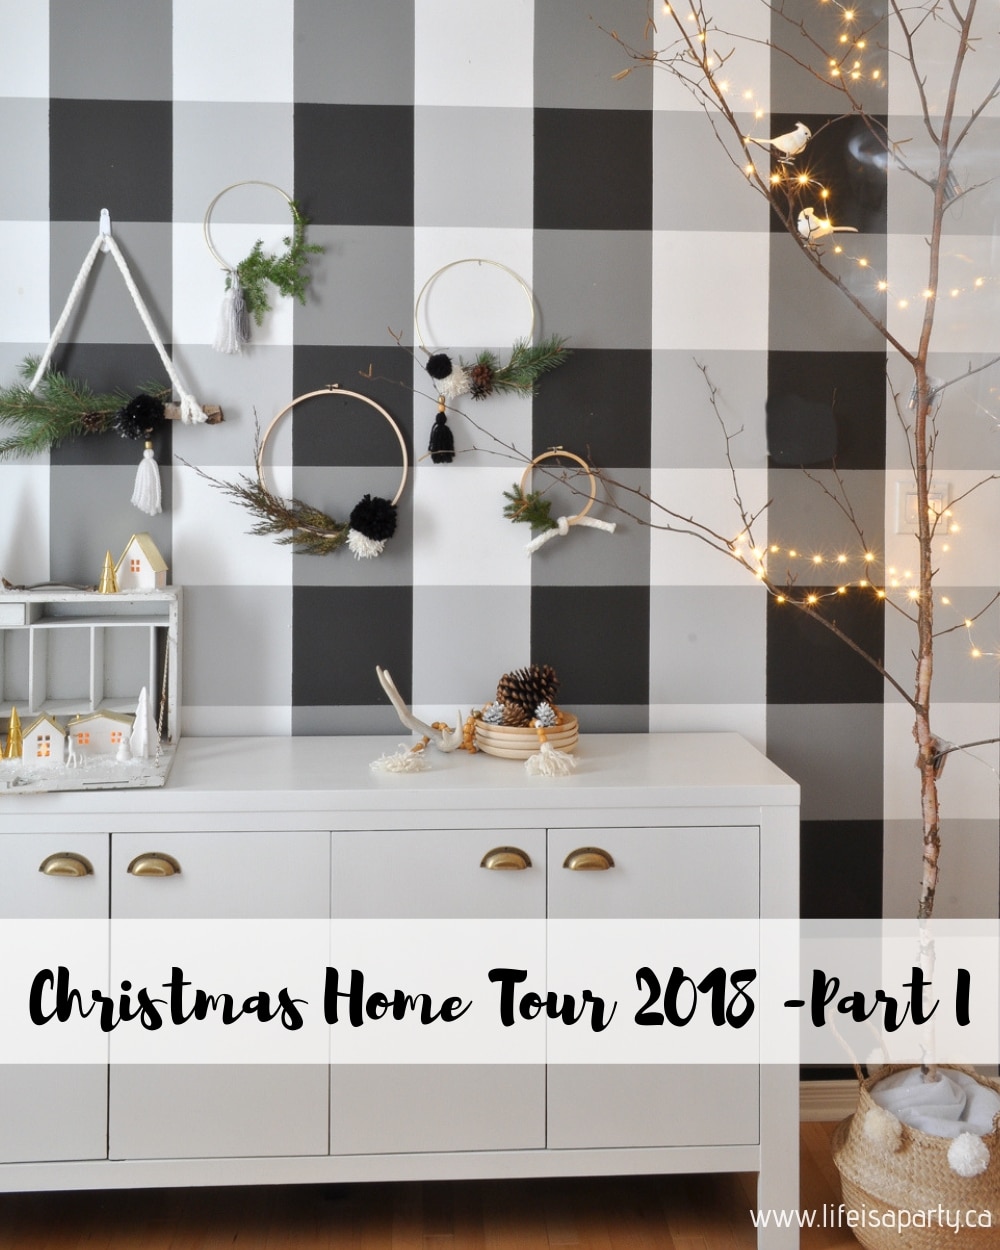 Scandinavian Christmas Decor Ideas Home Tour 2018 -Part I